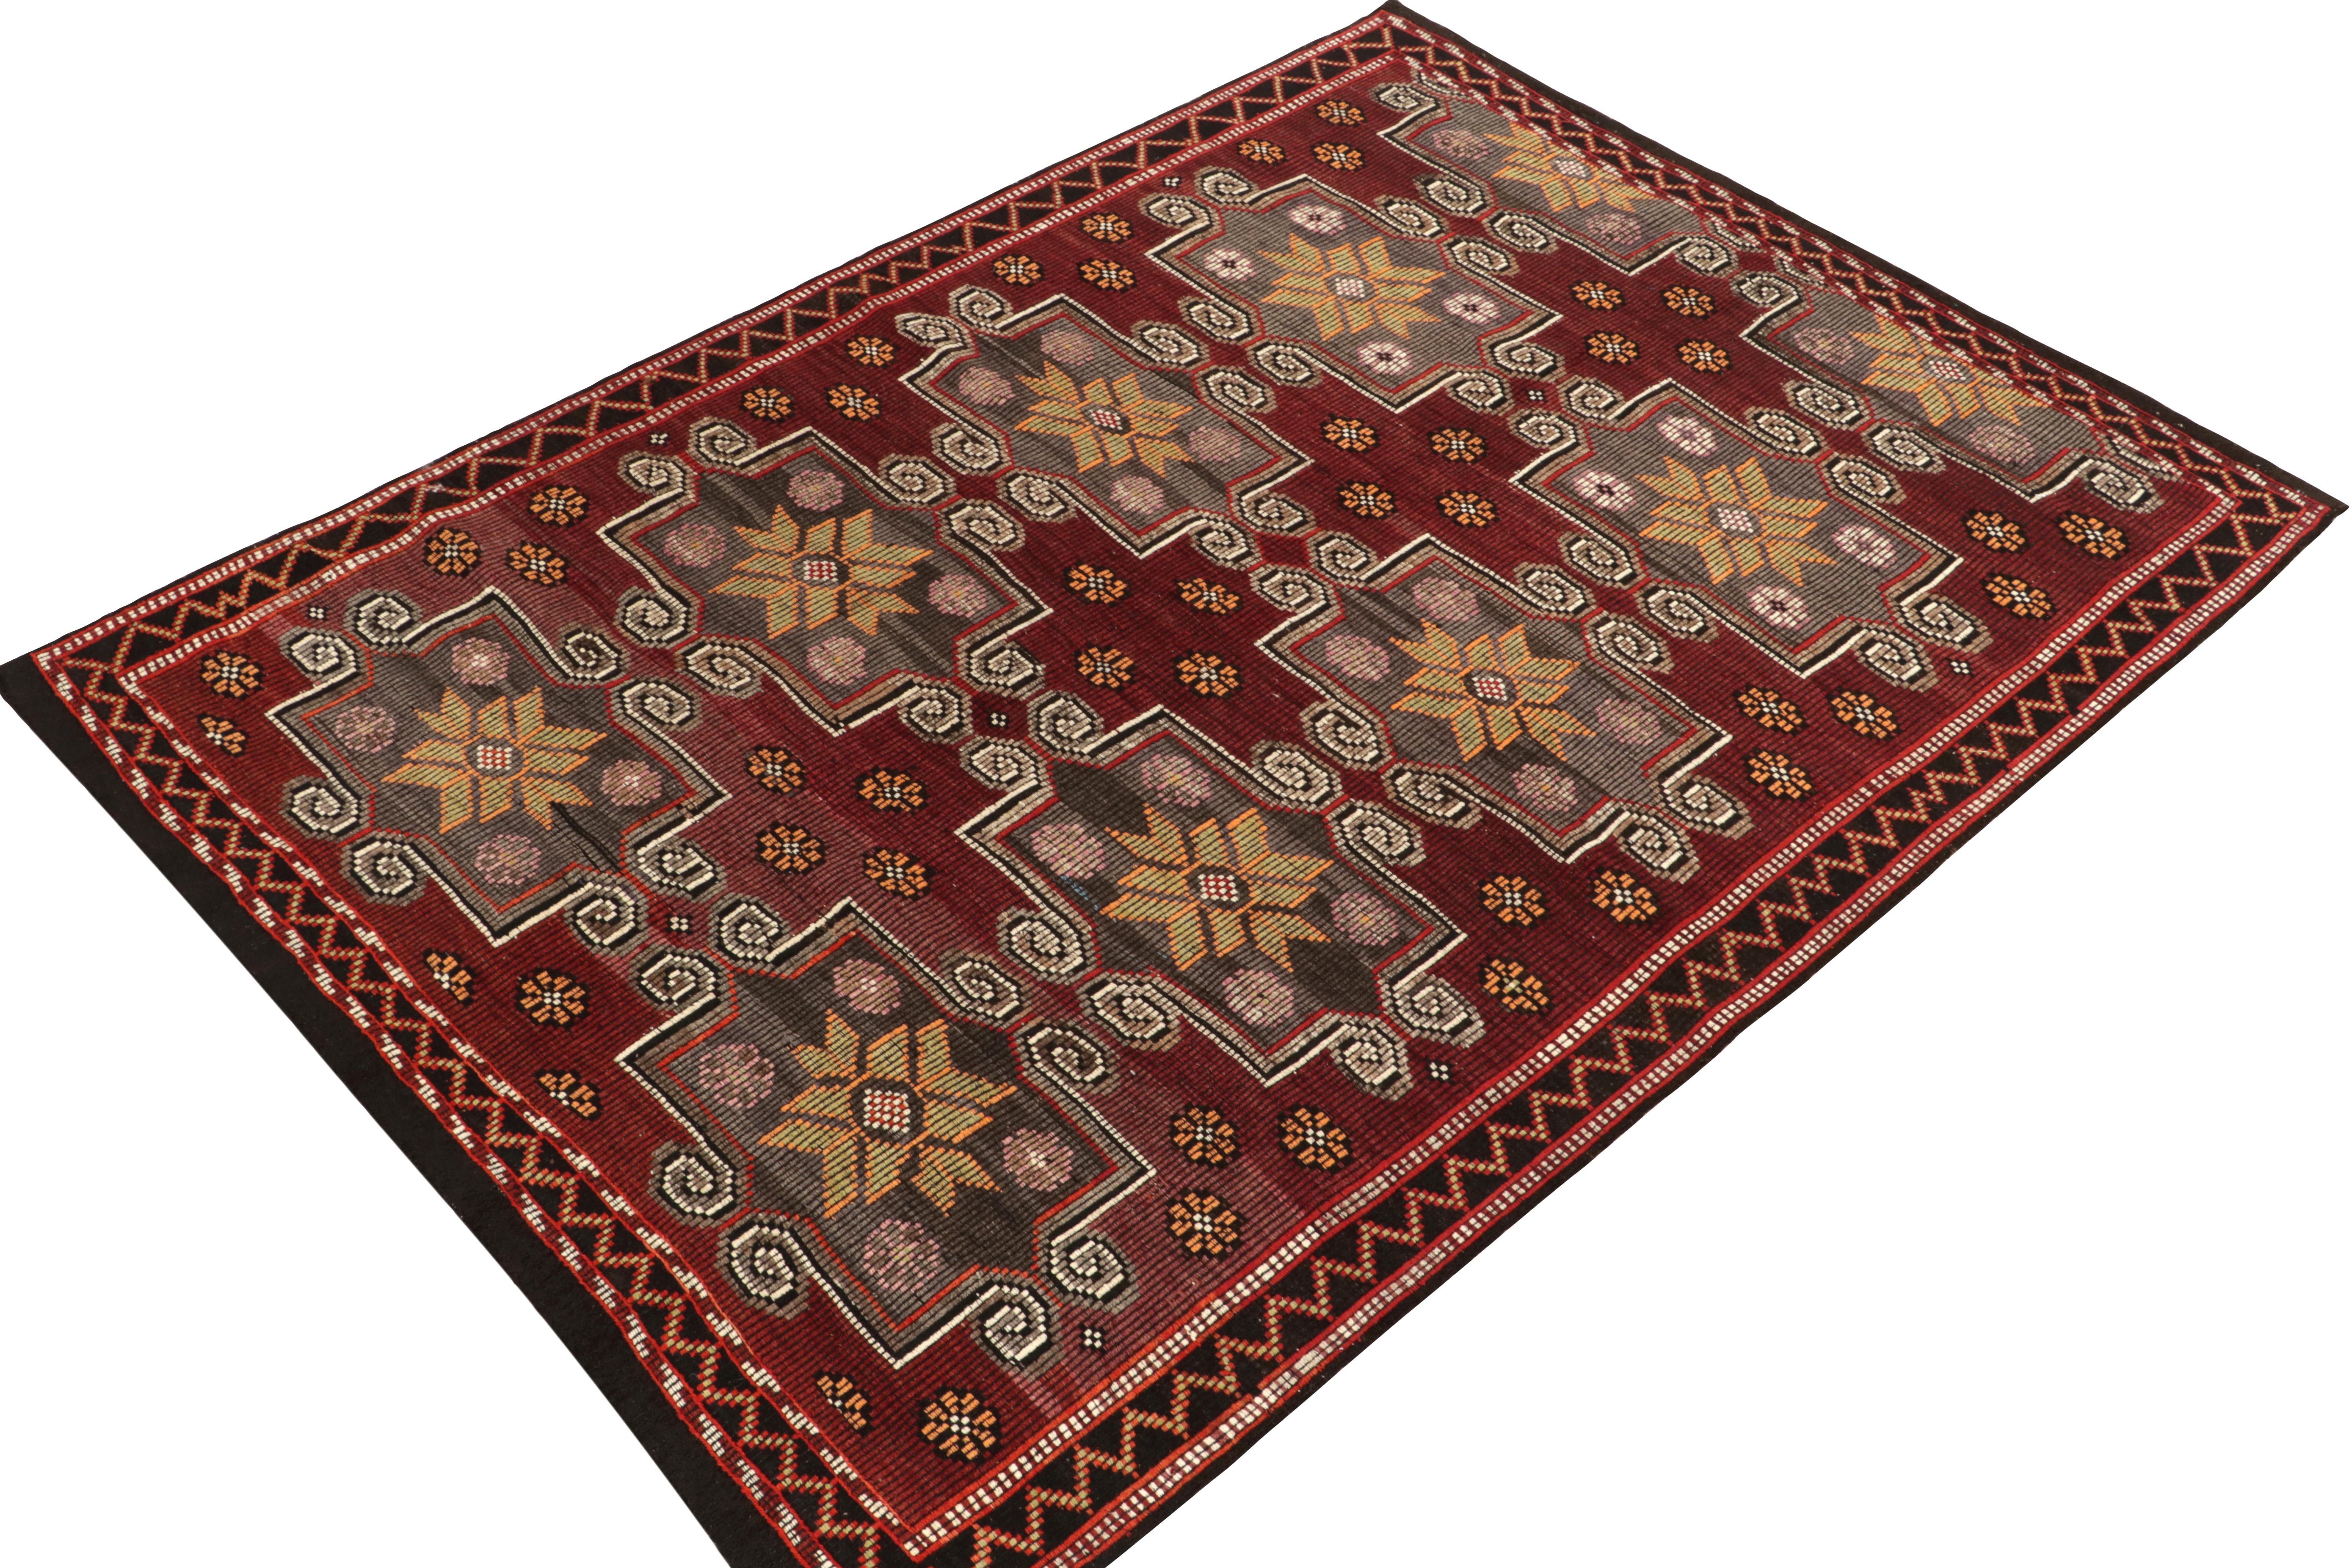 Turkish Vintage Chaput Kilim Rug in Red, Beige-Brown Geometric Floral by Rug & Kilim For Sale